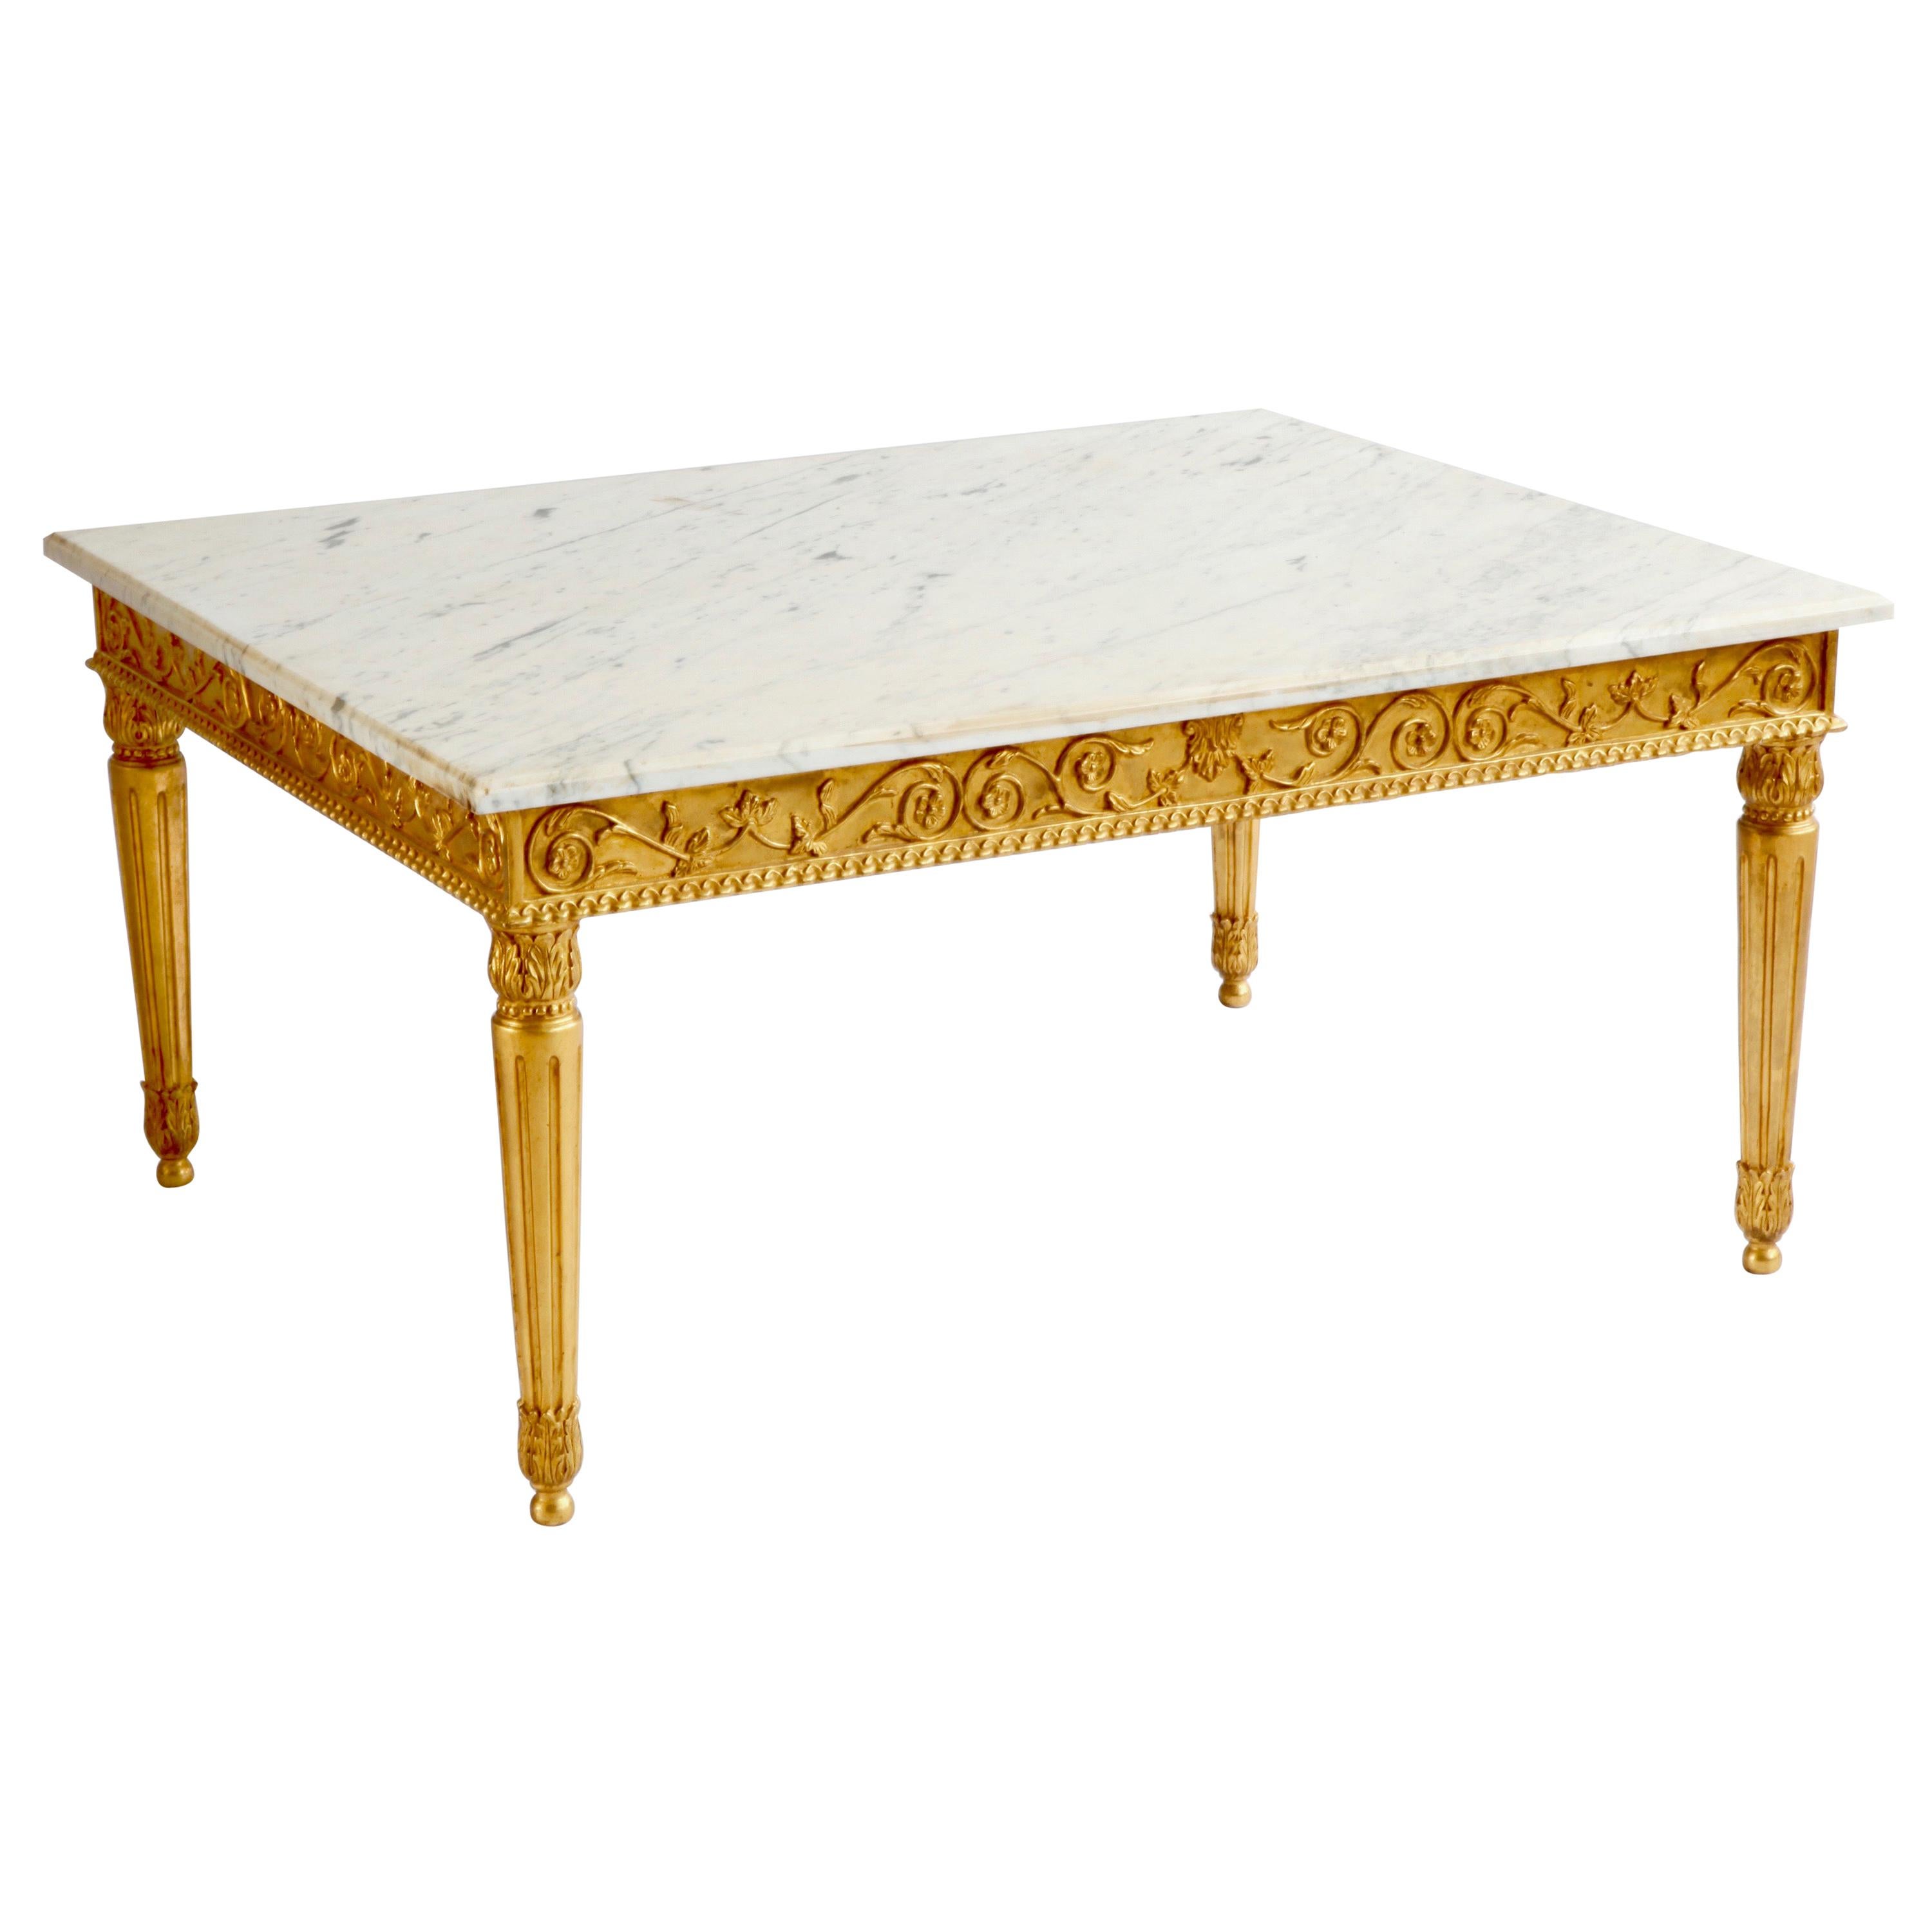 Table basse rectangulaire de style Louis XVI en marbre et doré, sculptée à la main